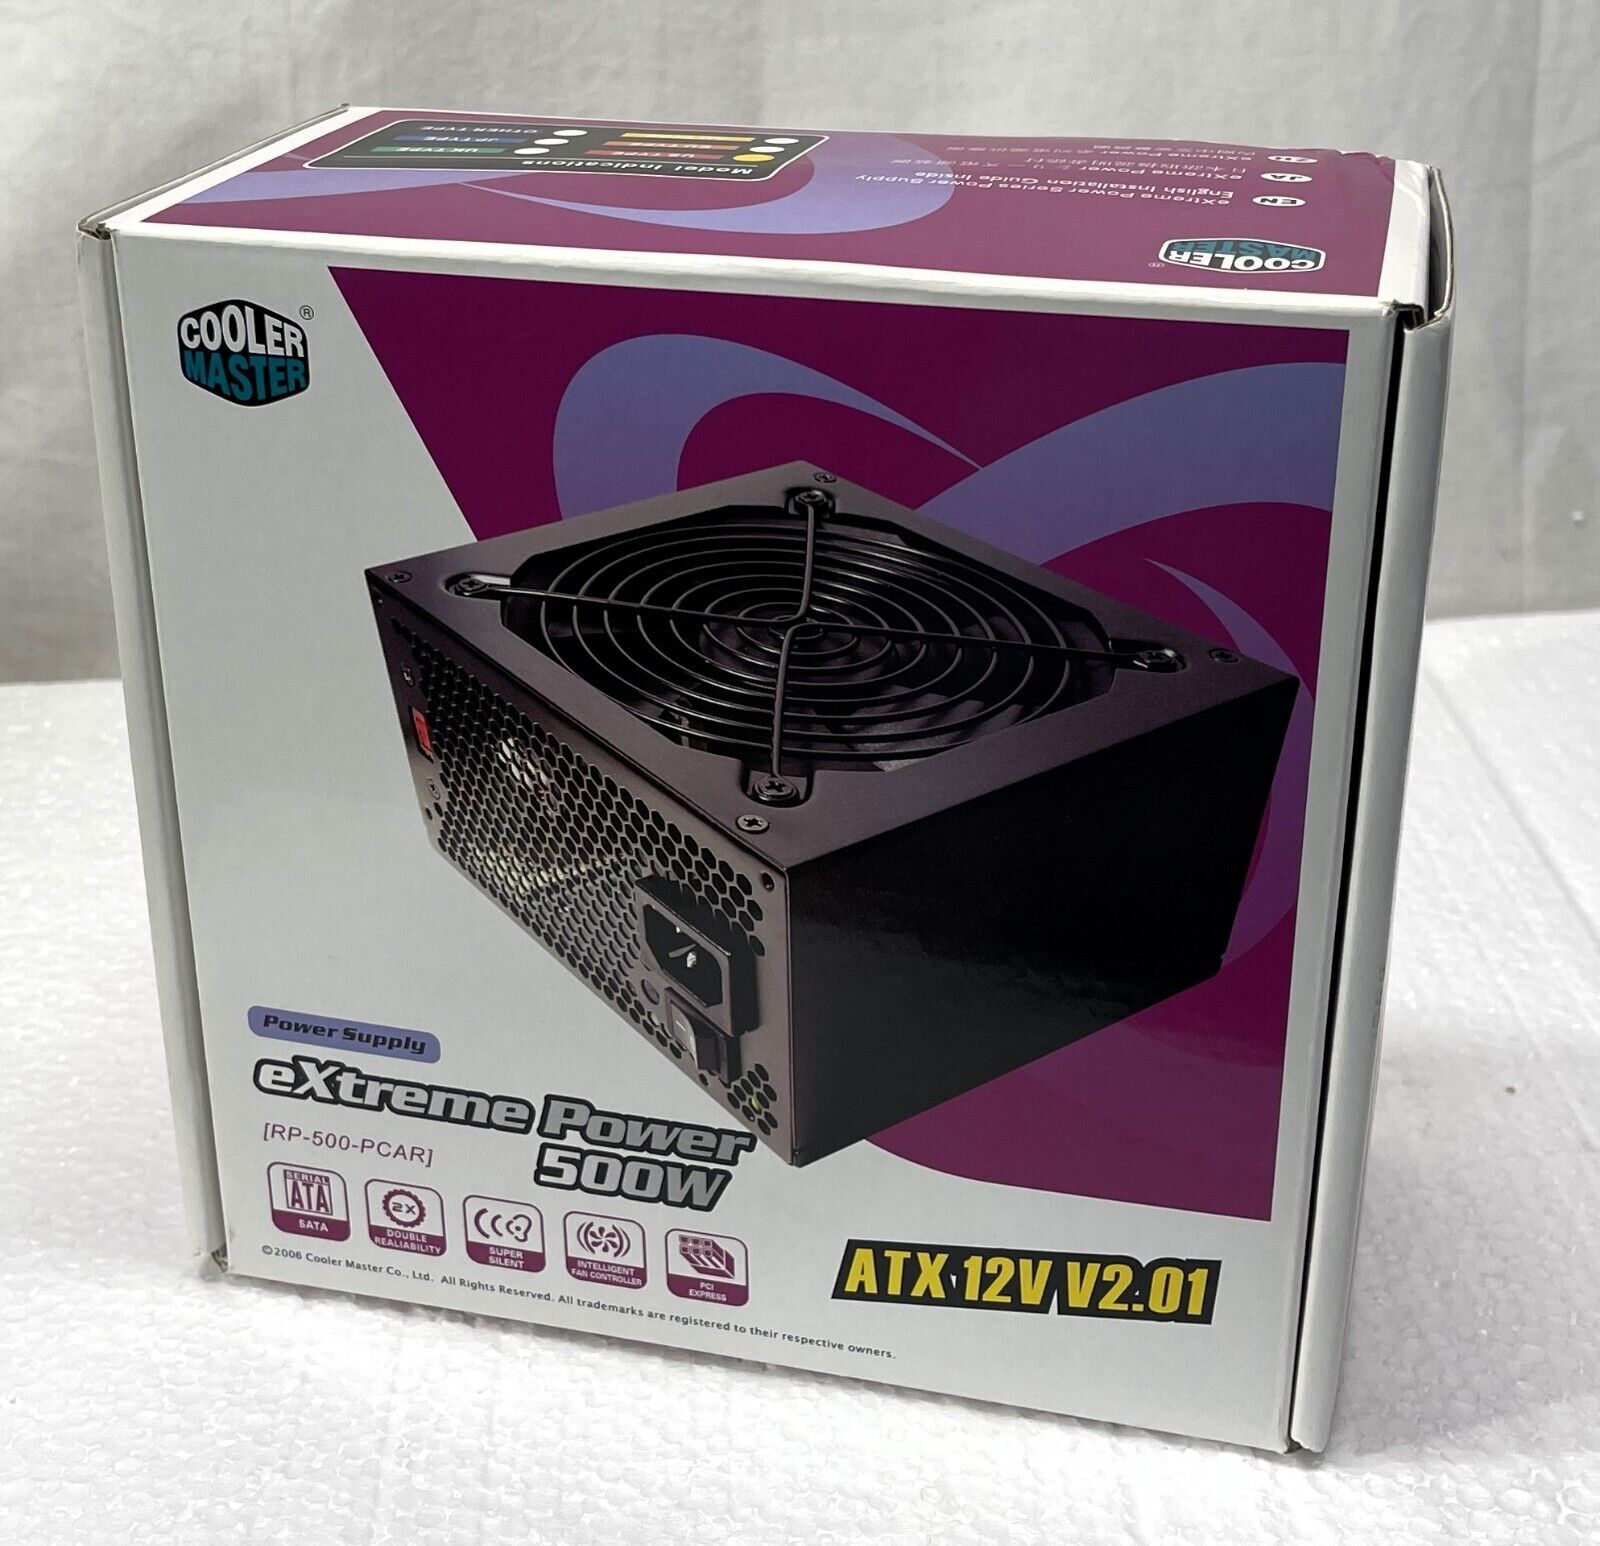 New Cooler Master eXtreme Power 500W PC Power Supply ATX 12V v2.01 PSU